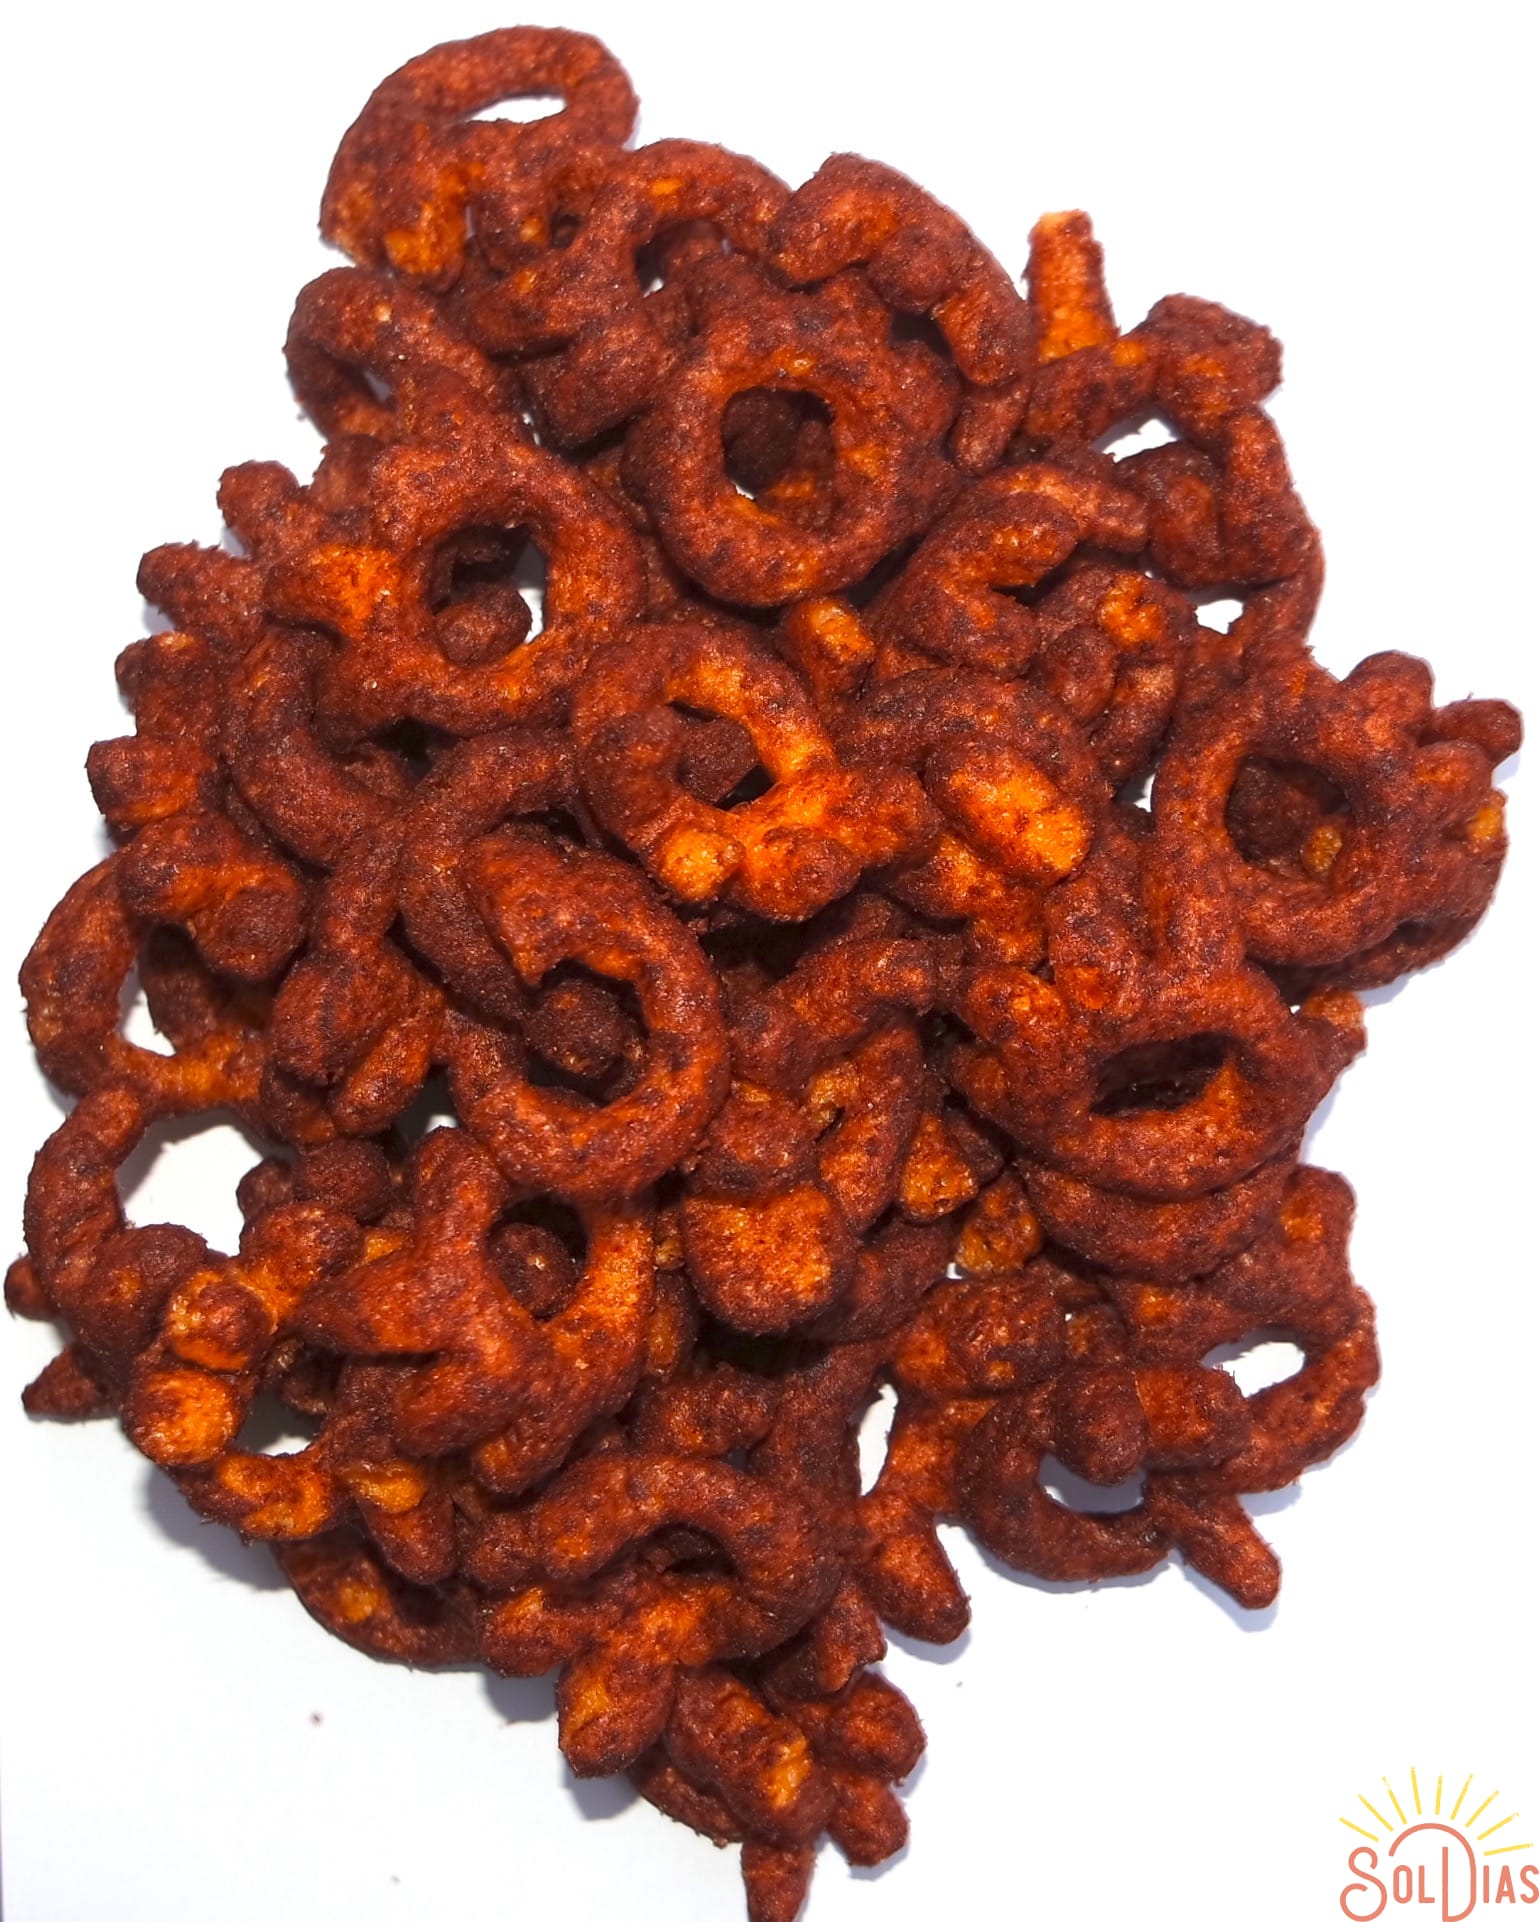 Cheetos Colmillos - Mexican Cheetos – Pop Snax